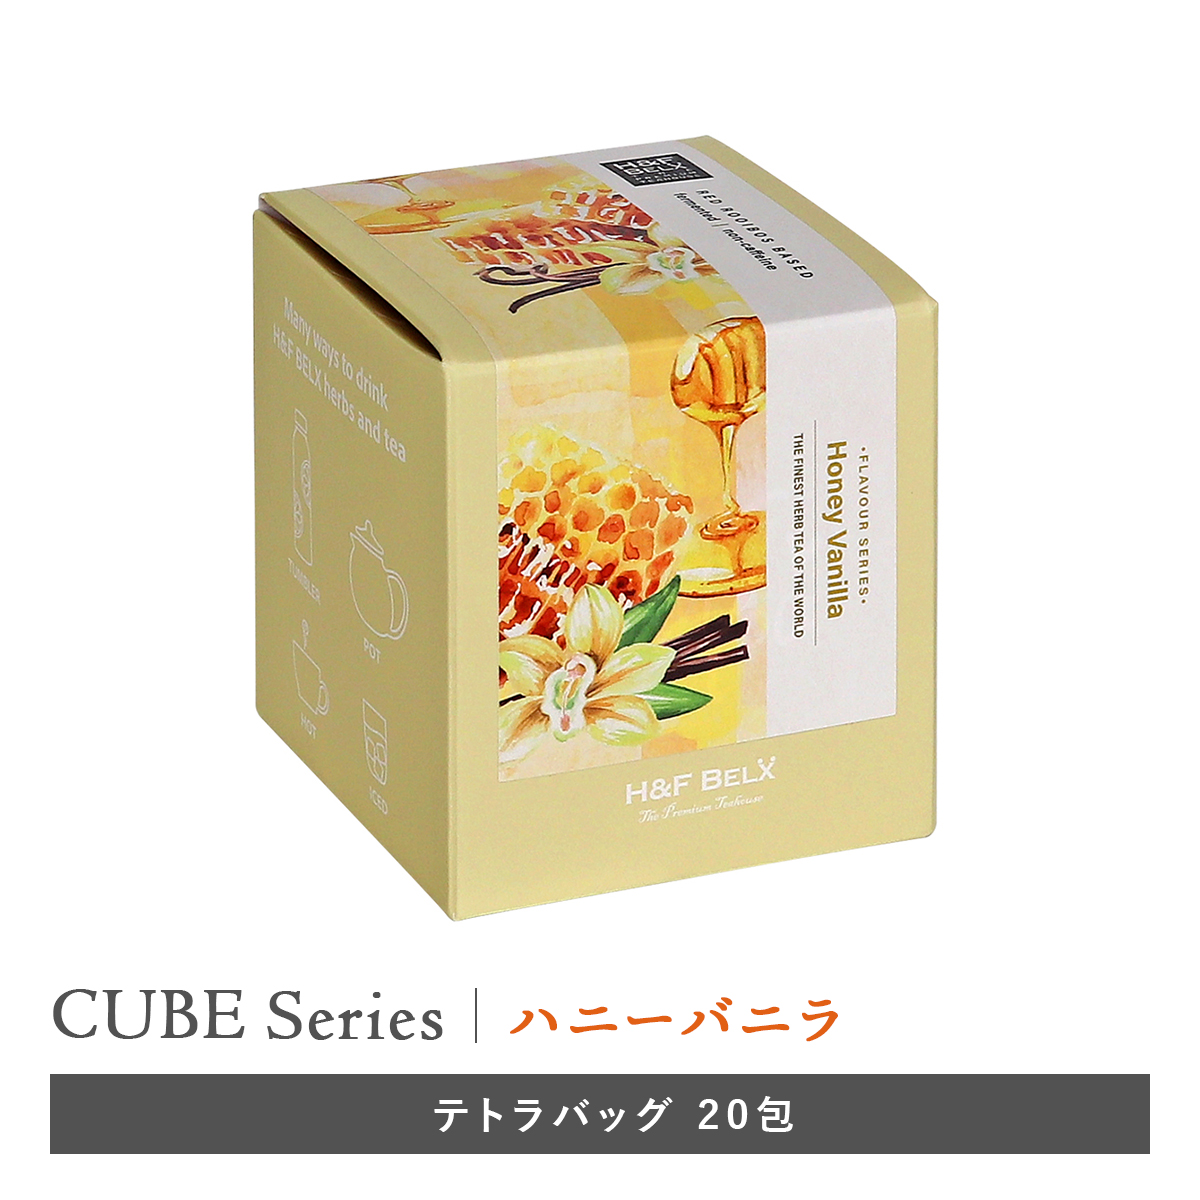 CUBE］ハニーバニラ 2.0g×20包 バニラシリーズ H&F BELX ノンカフェ 